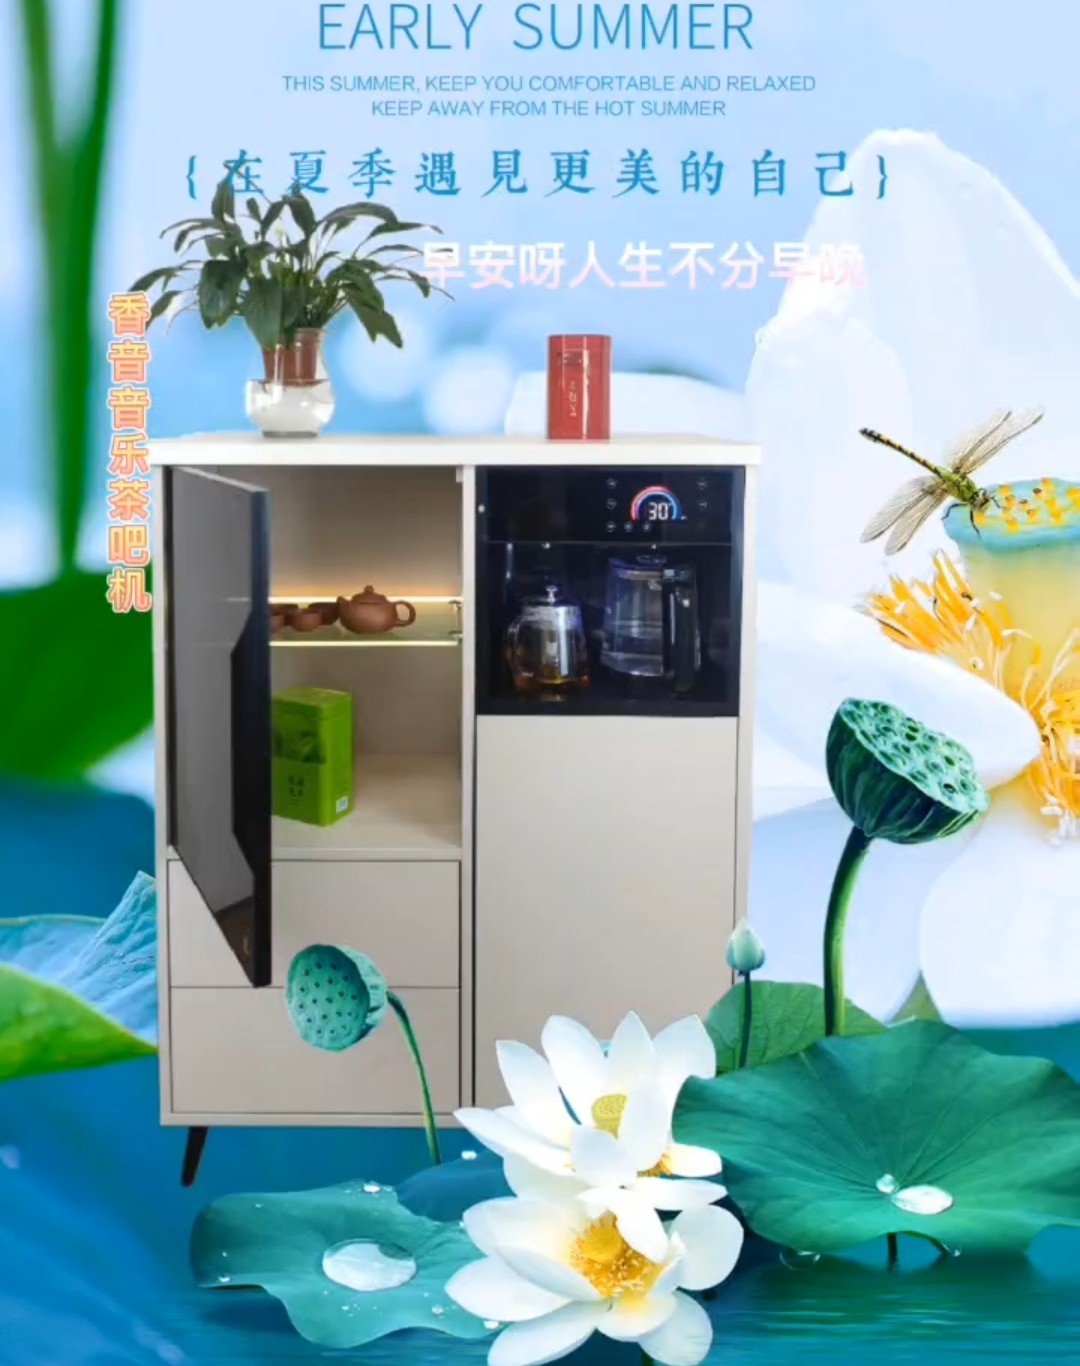 COTV直播-重庆香音家用电器有限责任公司专业经营销售“ 香音”品牌系列木质茶吧机、铁质茶吧机等系列产品，欢迎全球各地客商采购批发。